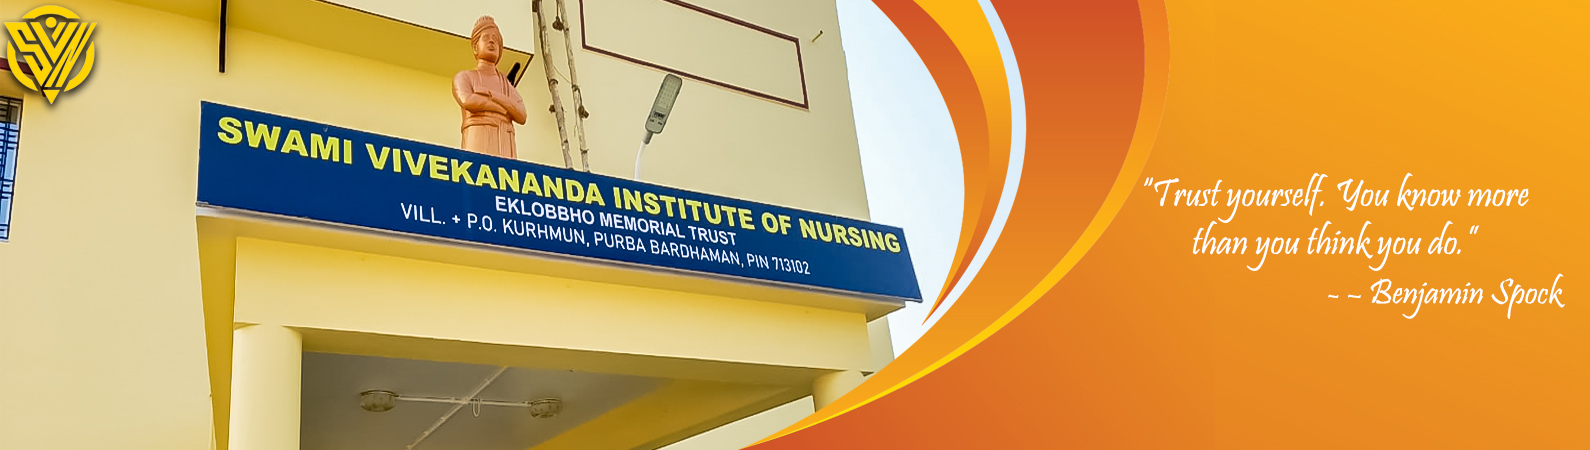 Nursing colleges in Bangalore